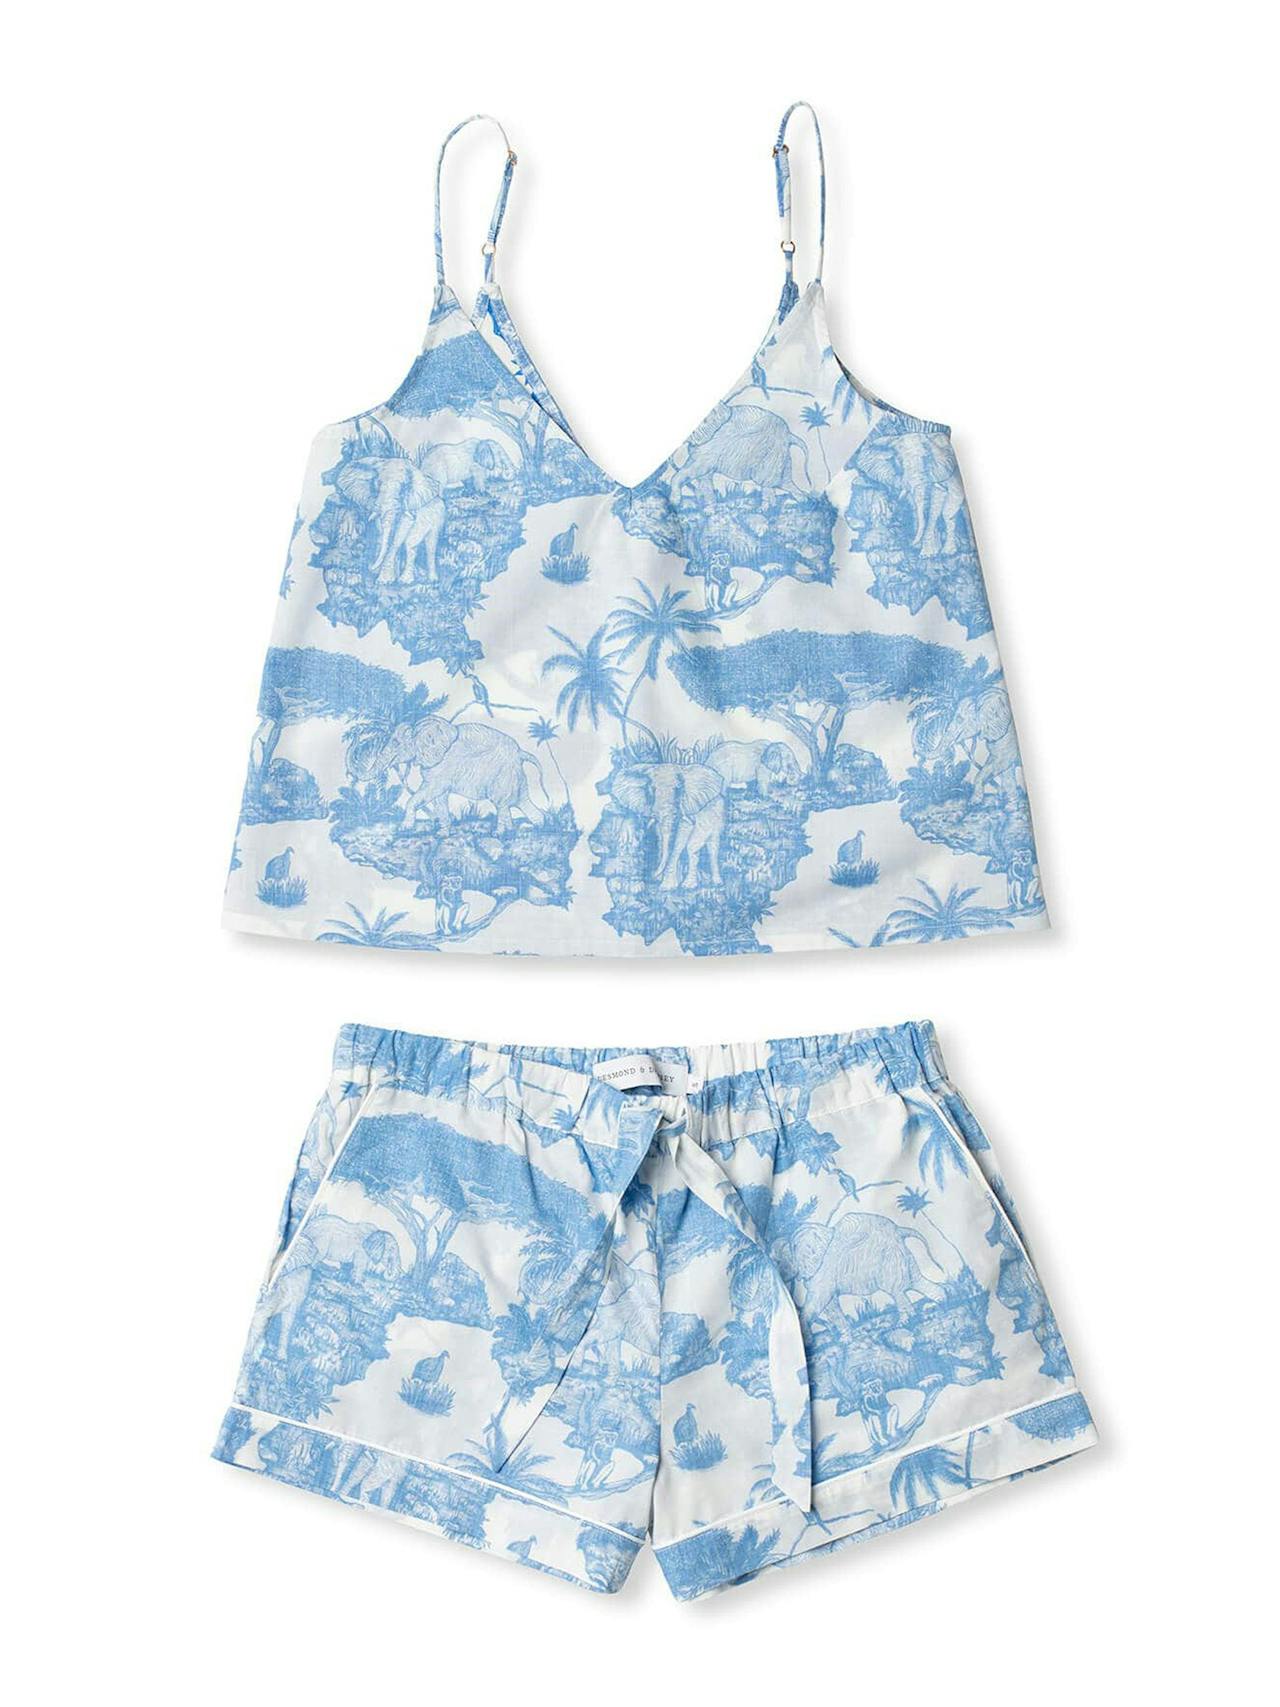 Cami top and shorts set loxodonta print blue